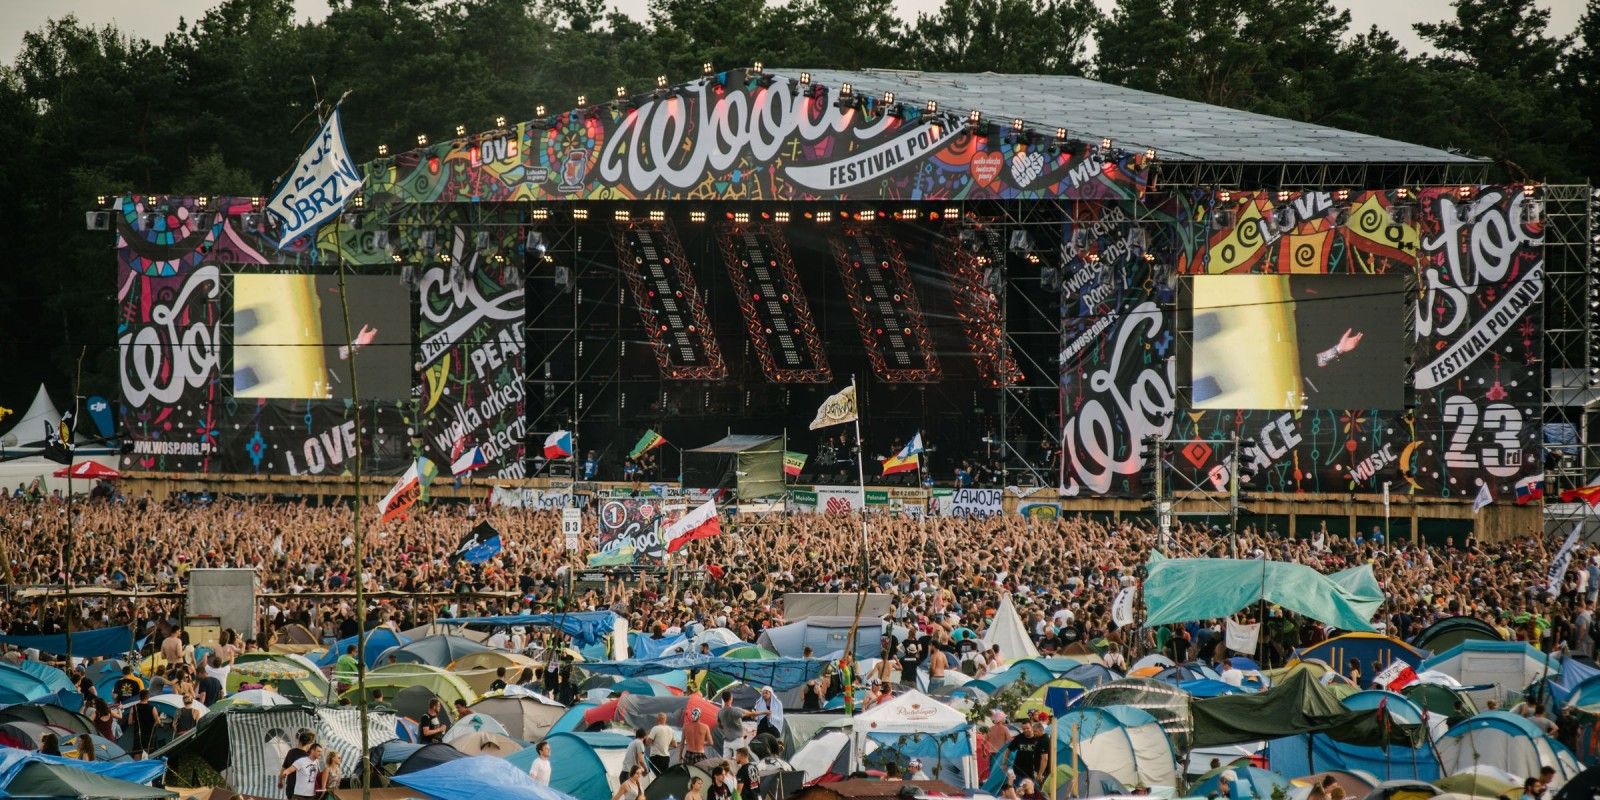 Woodstock Festival Poland 2017